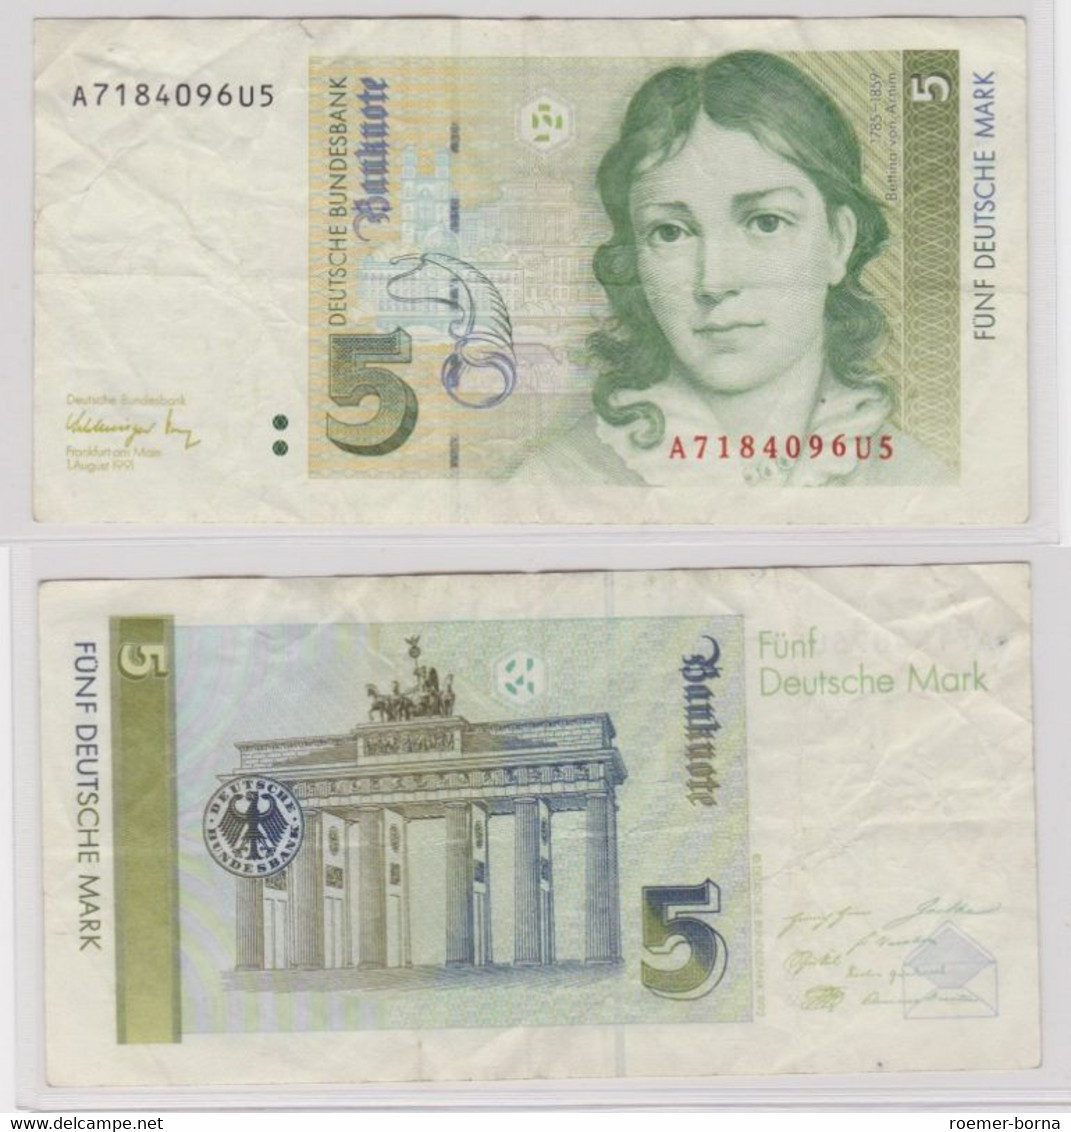 T144294 Banknote 5 DM Deutsche Mark Ro. 296b Schein 1.August 1991 KN A 7184096U5 - 5 Deutsche Mark